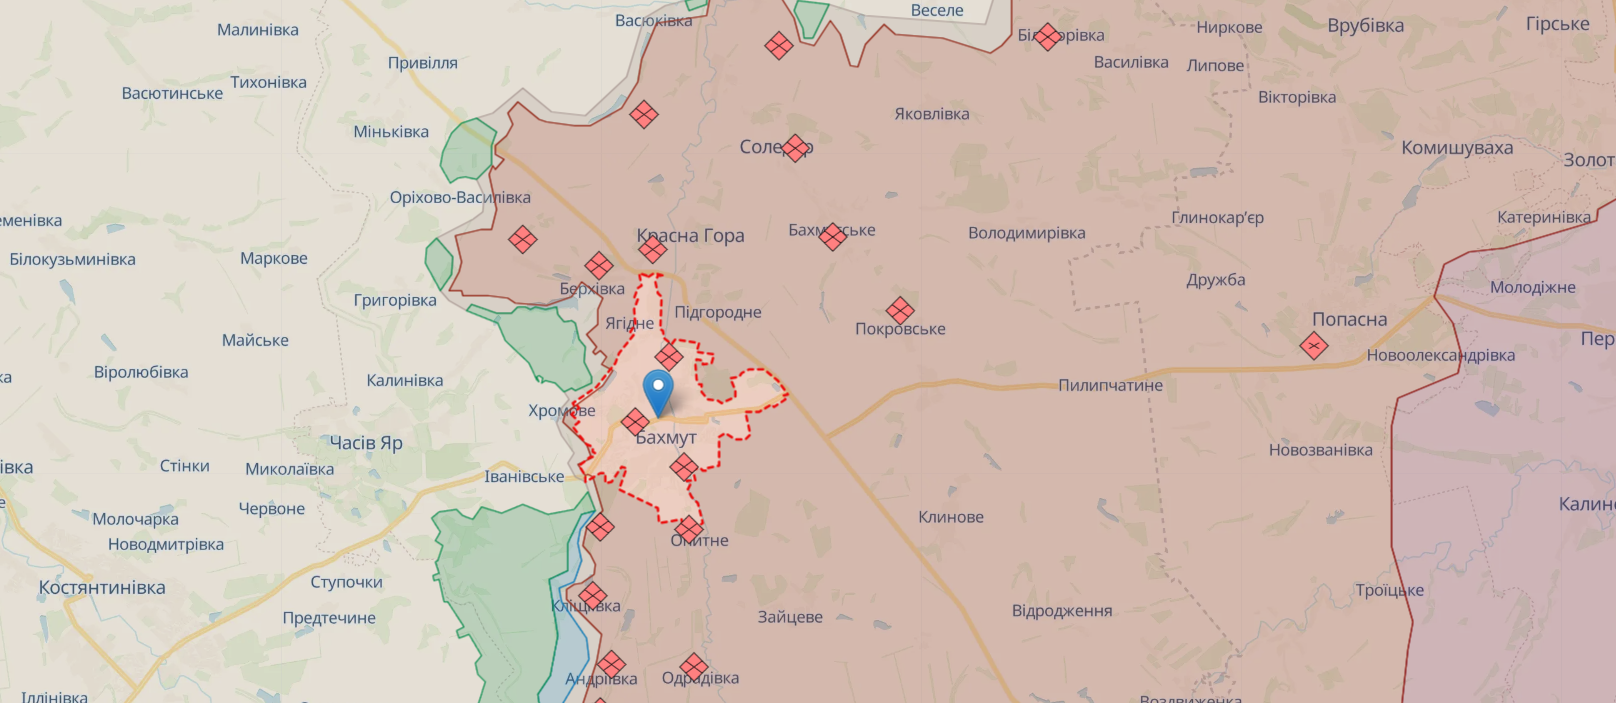 Війська РФ стягують сили на Бахмутський напрямок з півночі та півдня України: що відбувається. Карта